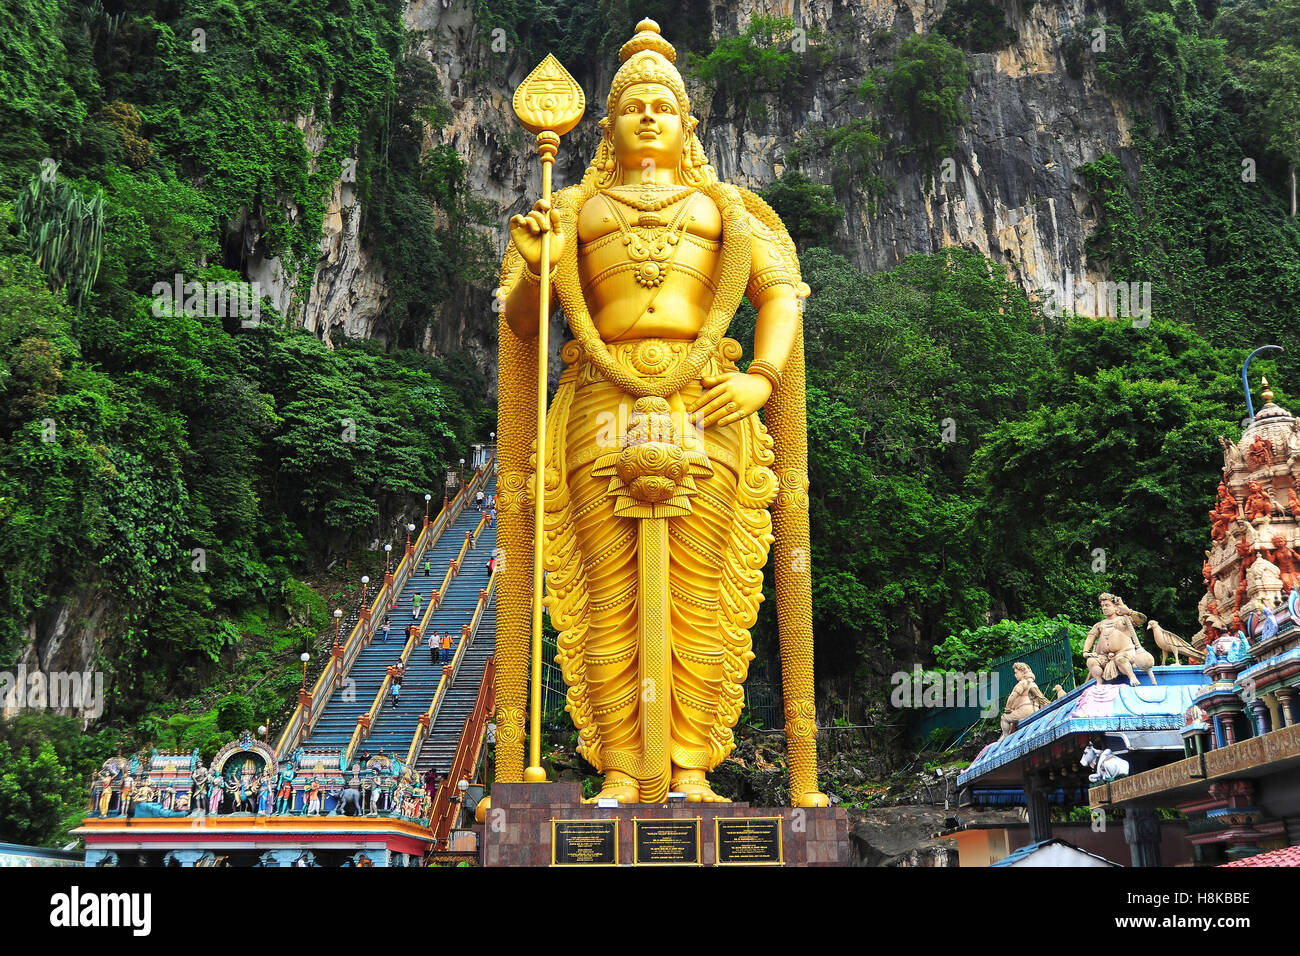 Lord Murugan Statue, Batu Caves, Selangor, Malaysia. Stock Photo